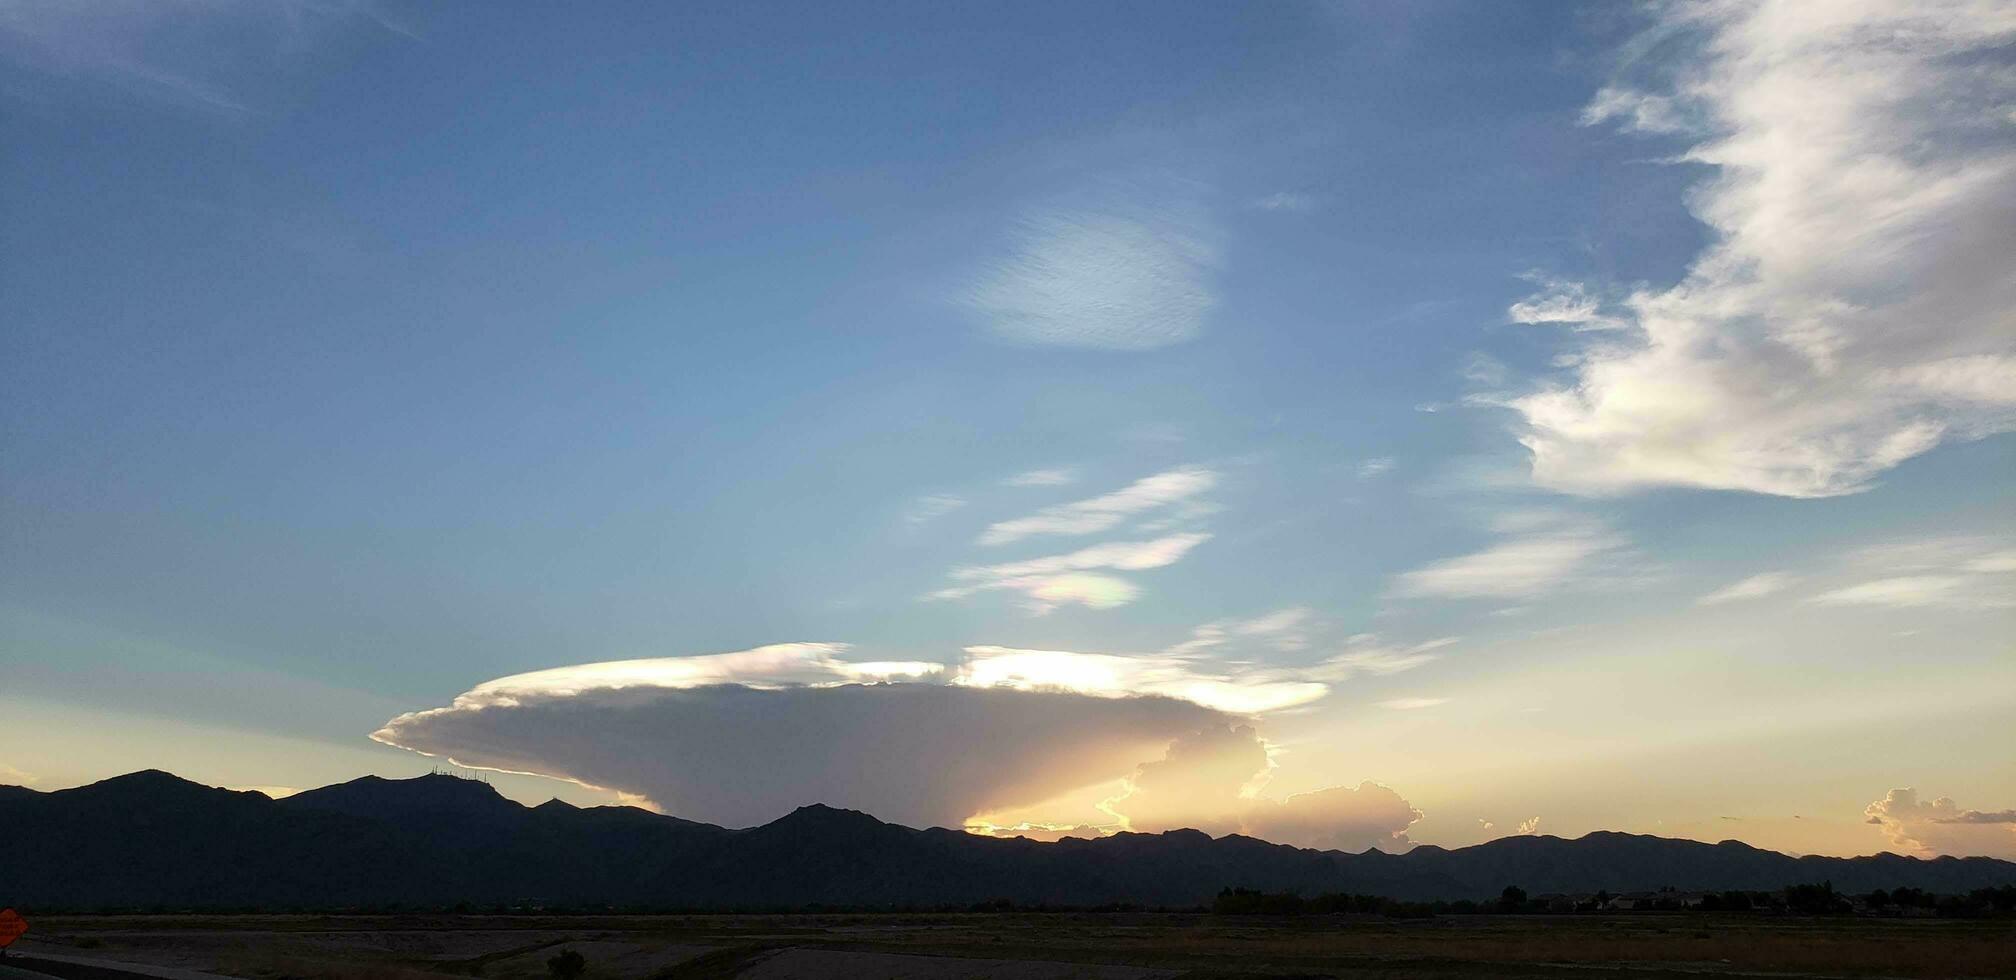 interesante nube terminado el blanco tanque montañas a puesta de sol. foto